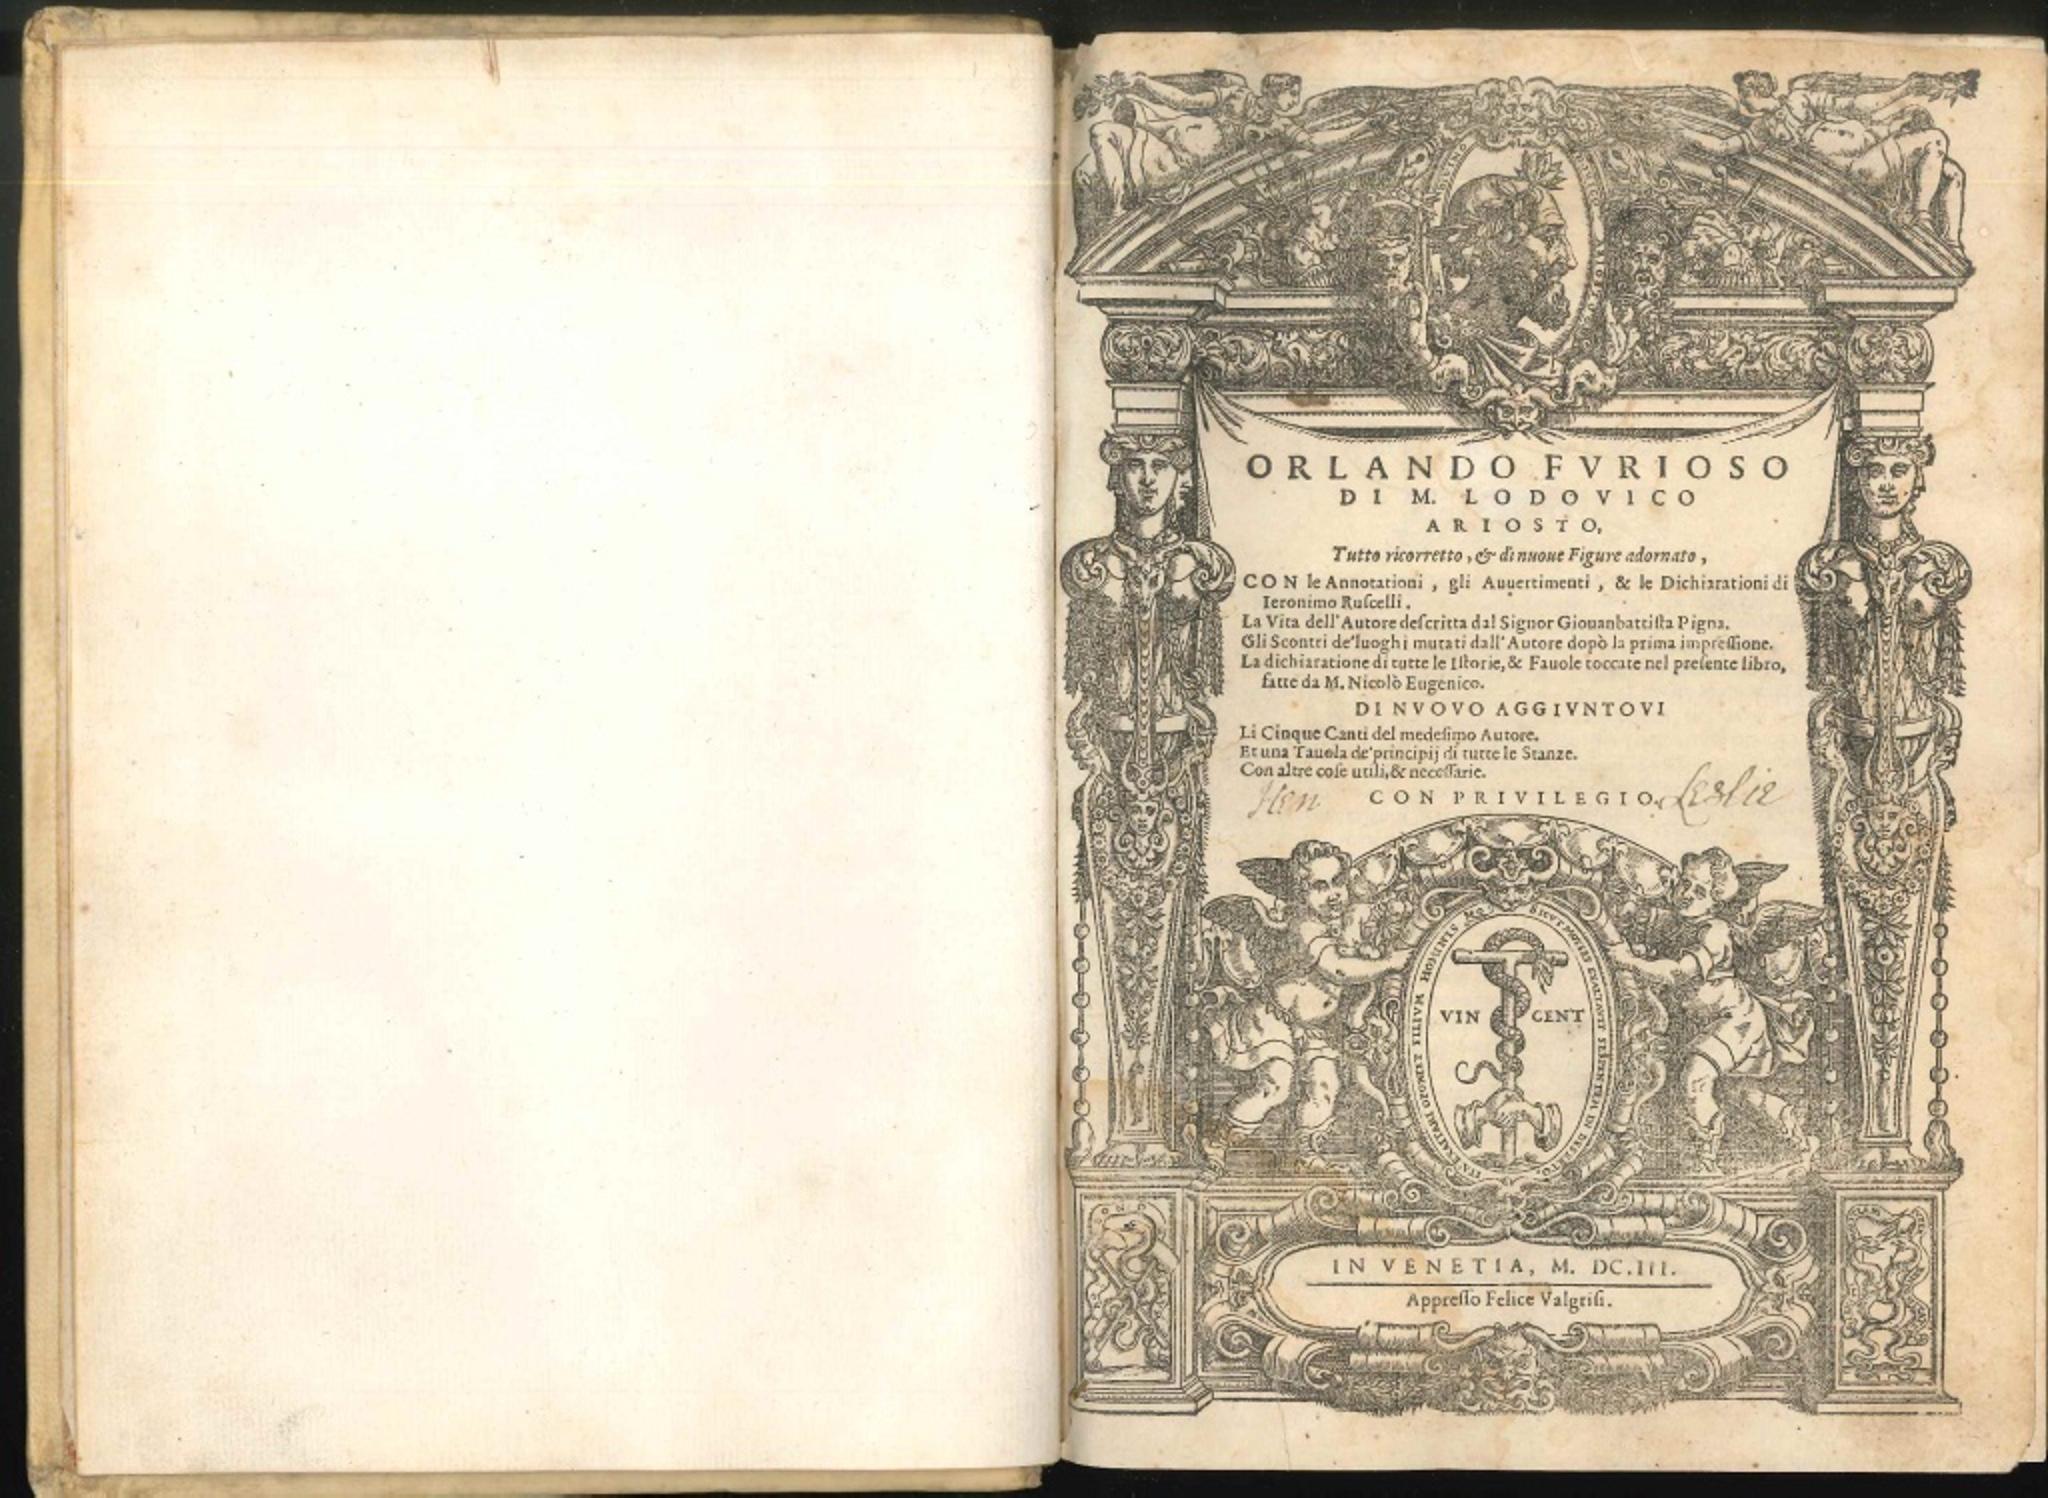 Orlando furioso - Illustrated Edition - 1603 - Art by Ludovico Ariosto